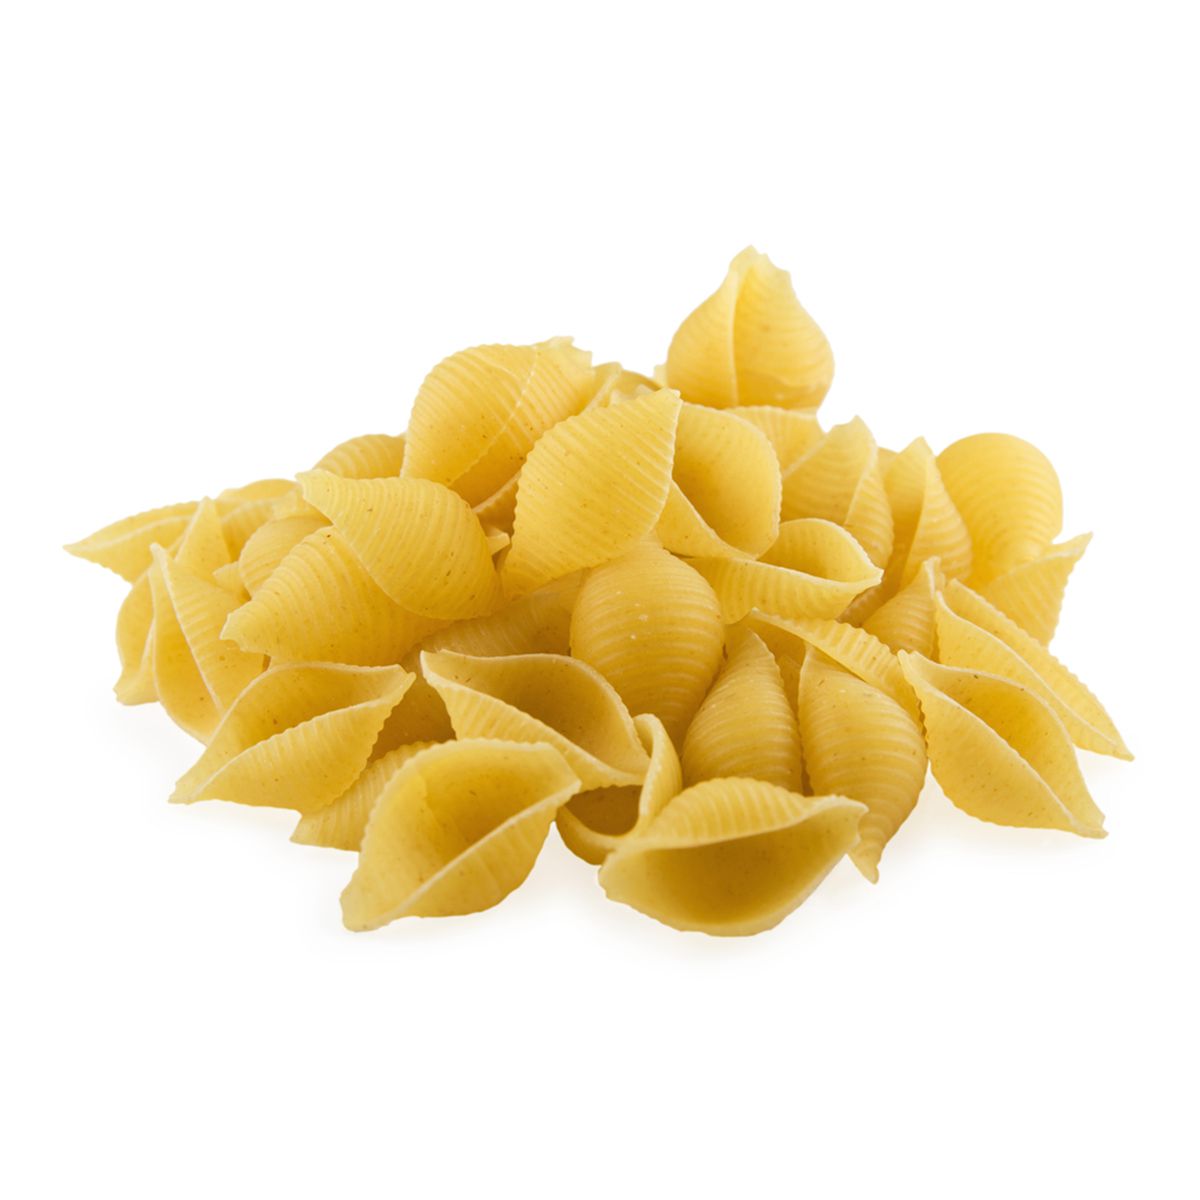 Barilla Conchiglie Rigate Pasta Shells 10 lb